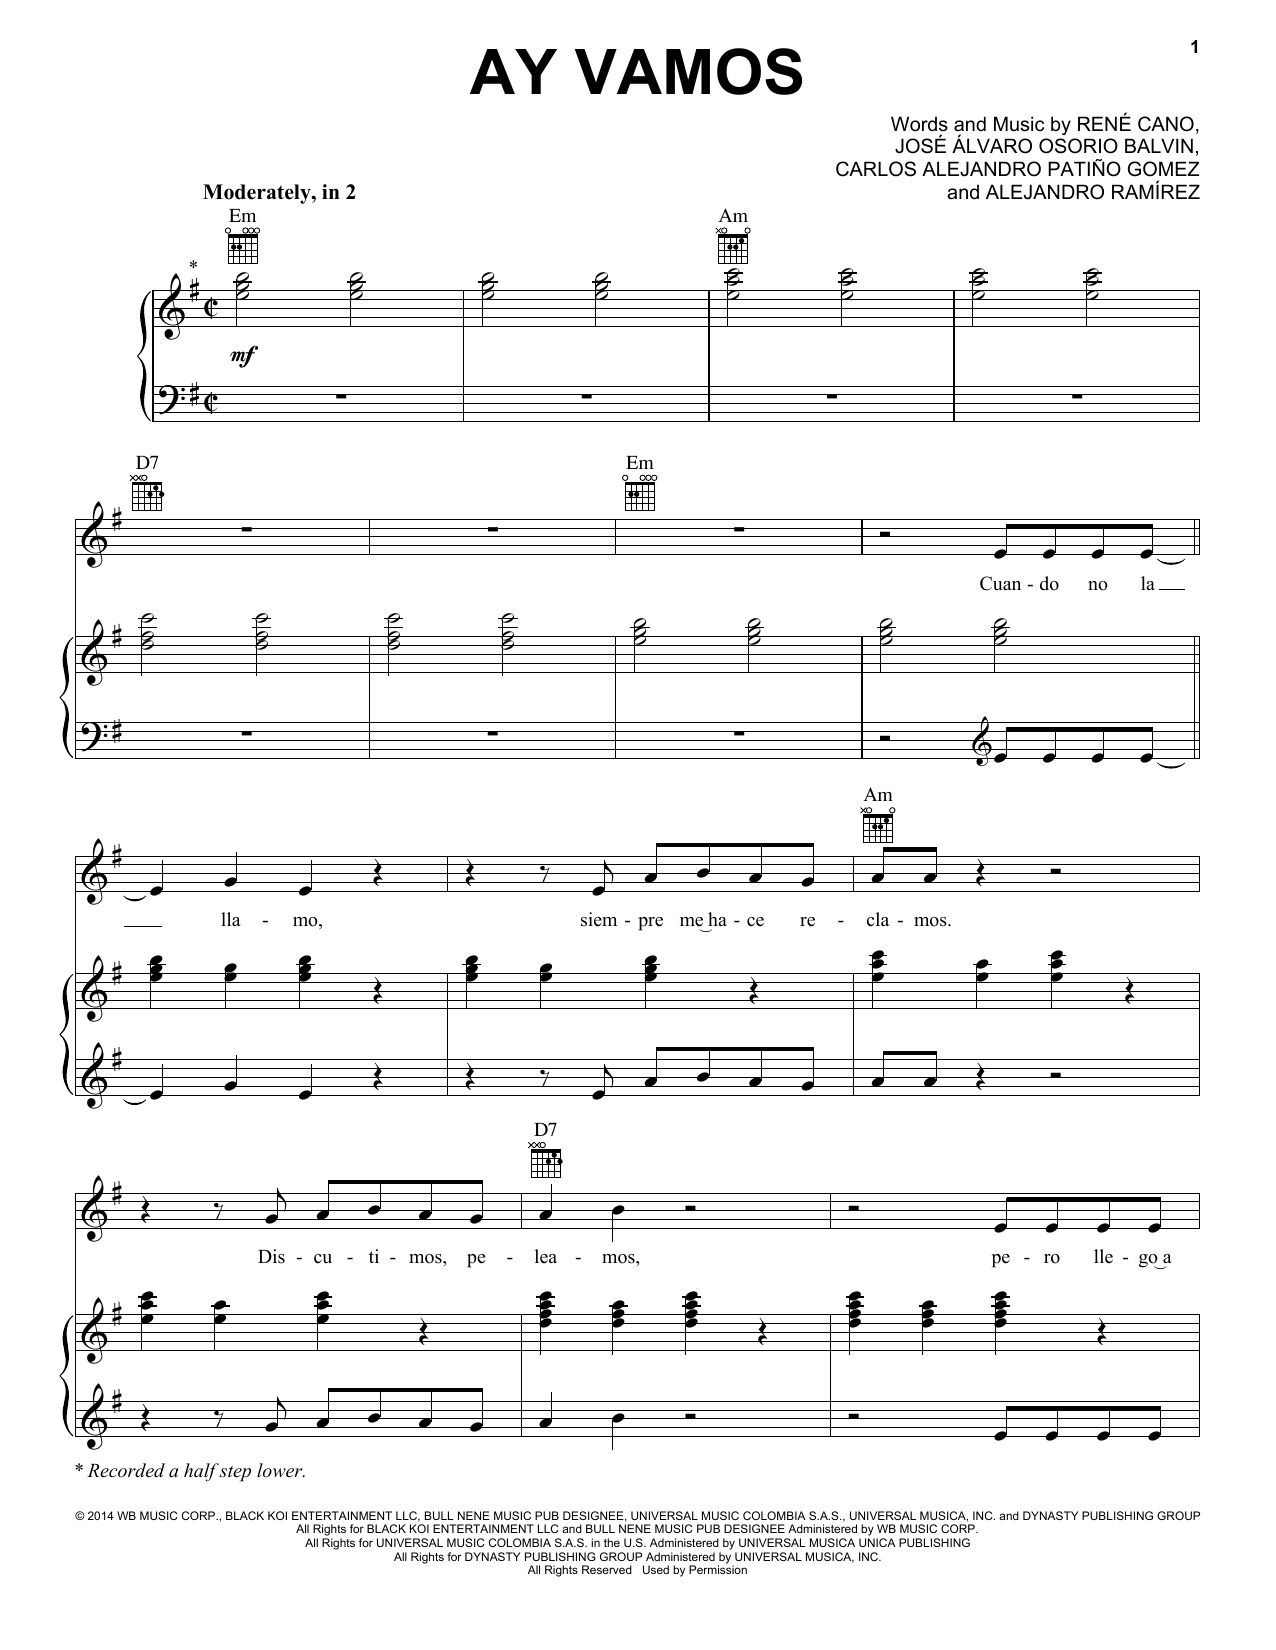 J Balvin Ay Vamos Sheet Music Notes & Chords for Piano, Vocal & Guitar (Right-Hand Melody) - Download or Print PDF